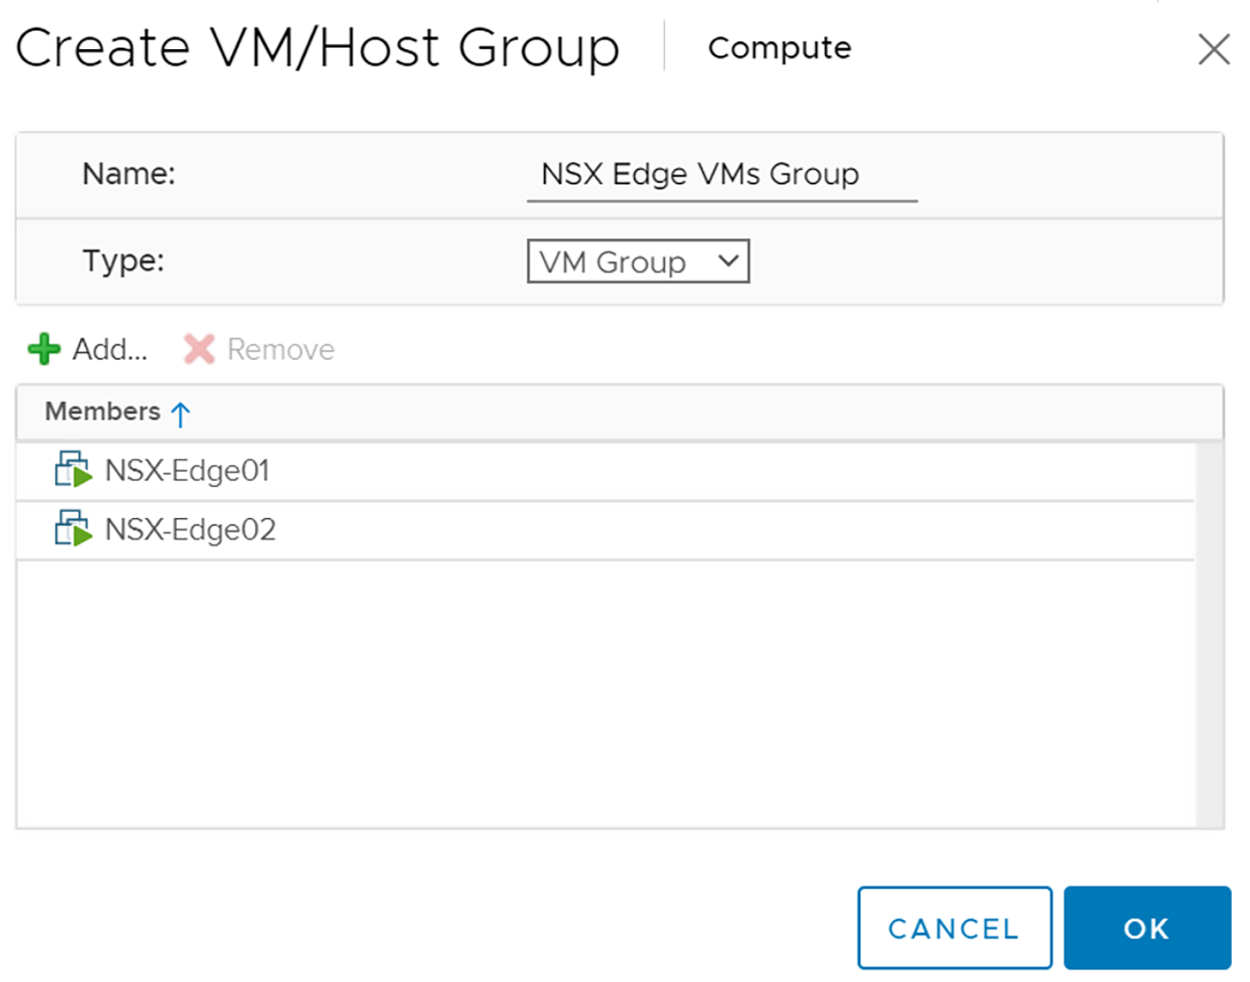 VM Group Created for NSX Edge VMs